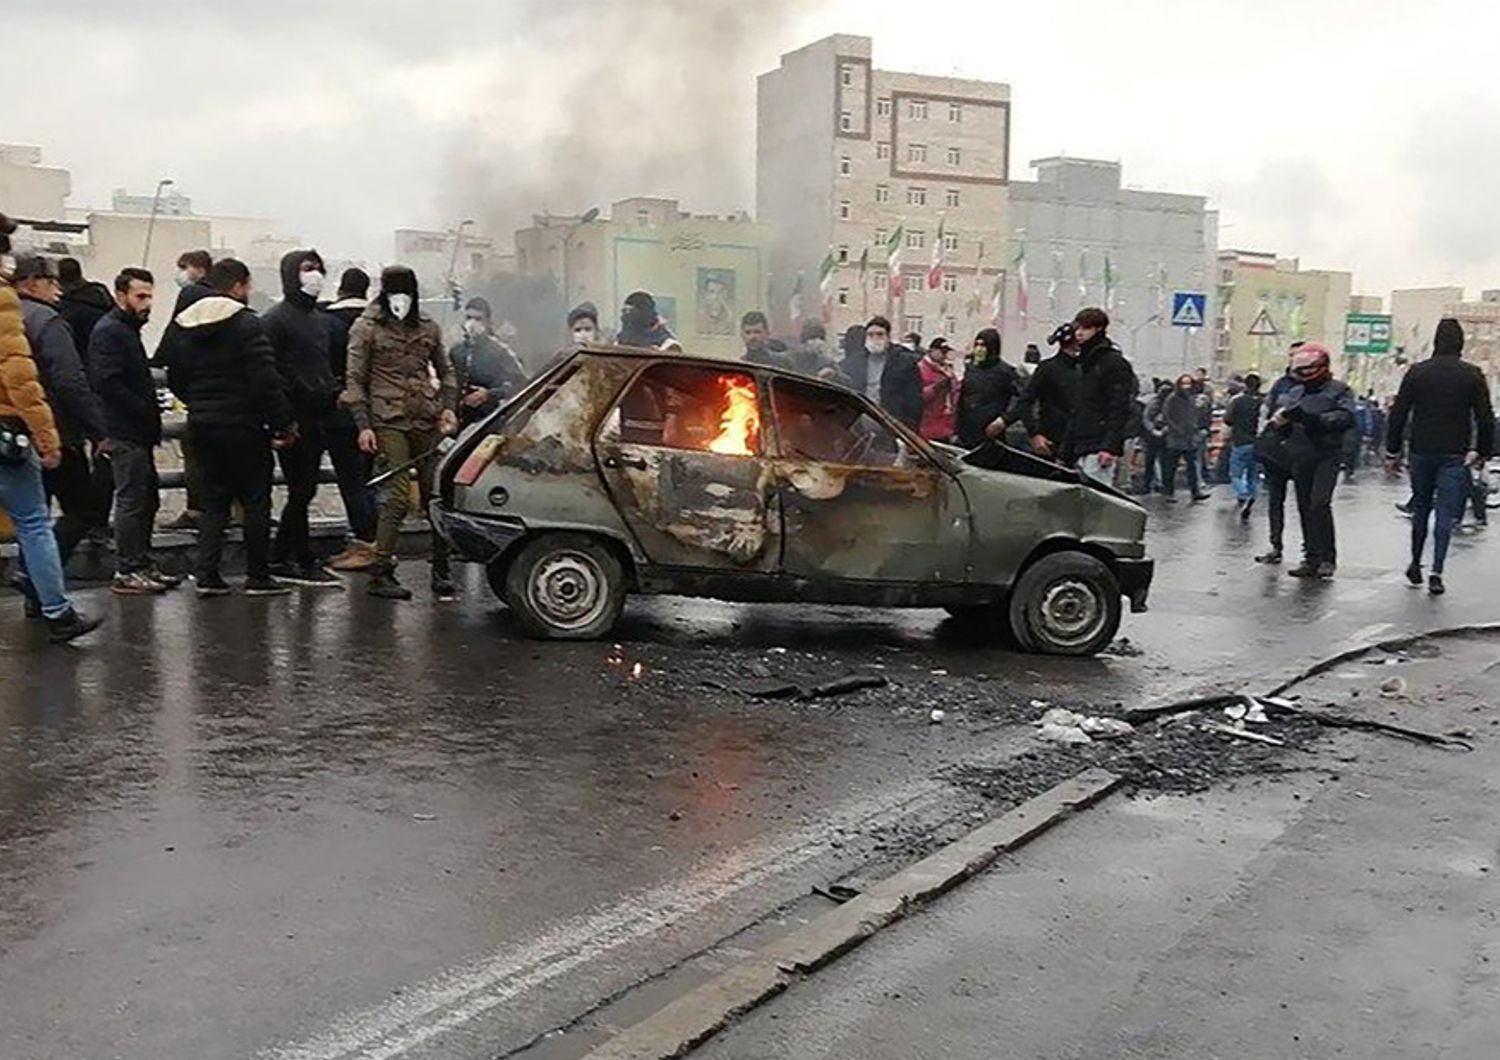 Proteste in Iran